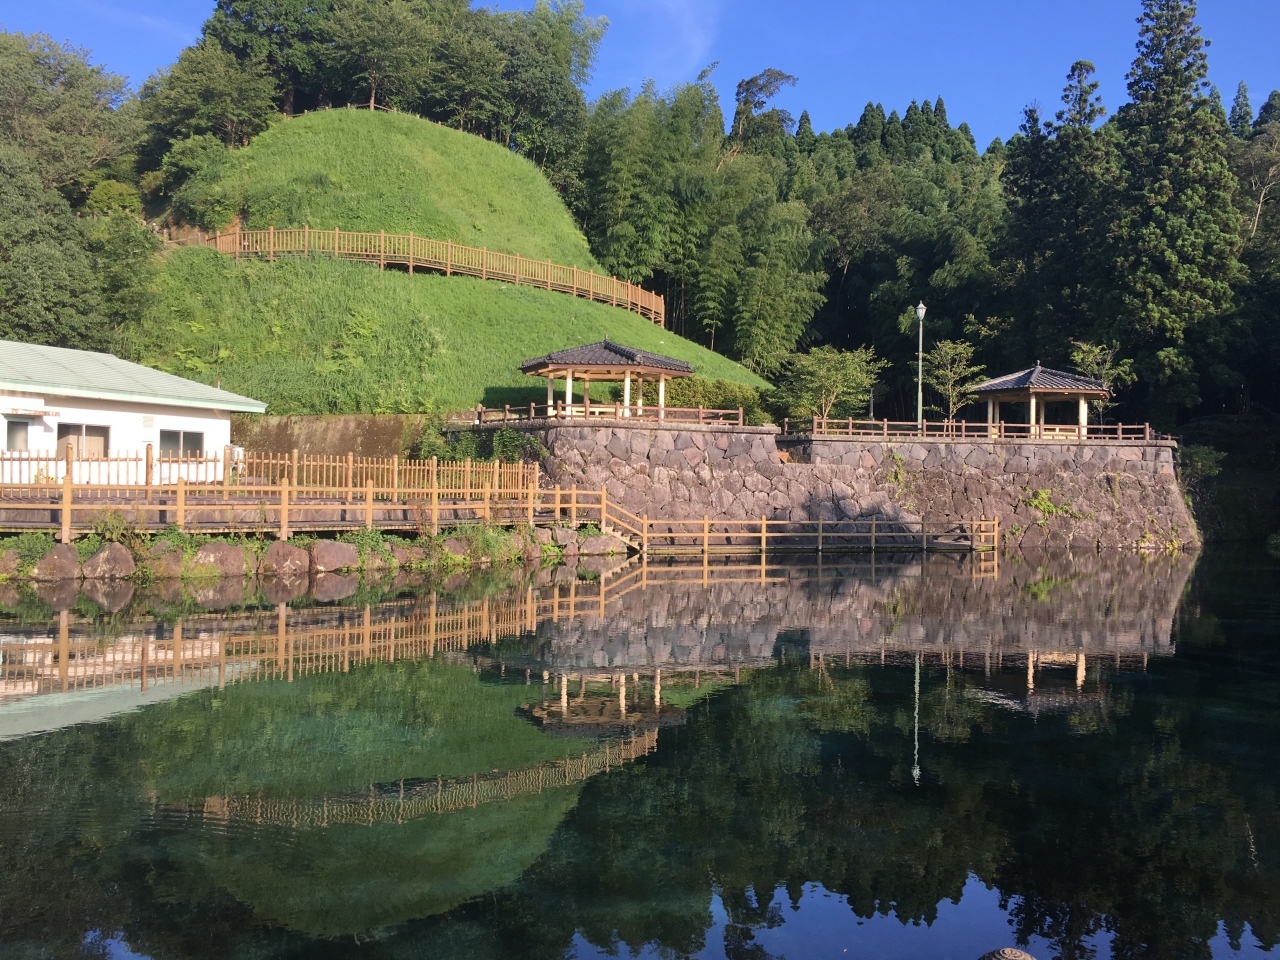 鹿児島県湧水町の丸池公園です。

近くの栗野岳の雨水が地中を流れて、この丸池に流れているそうです。